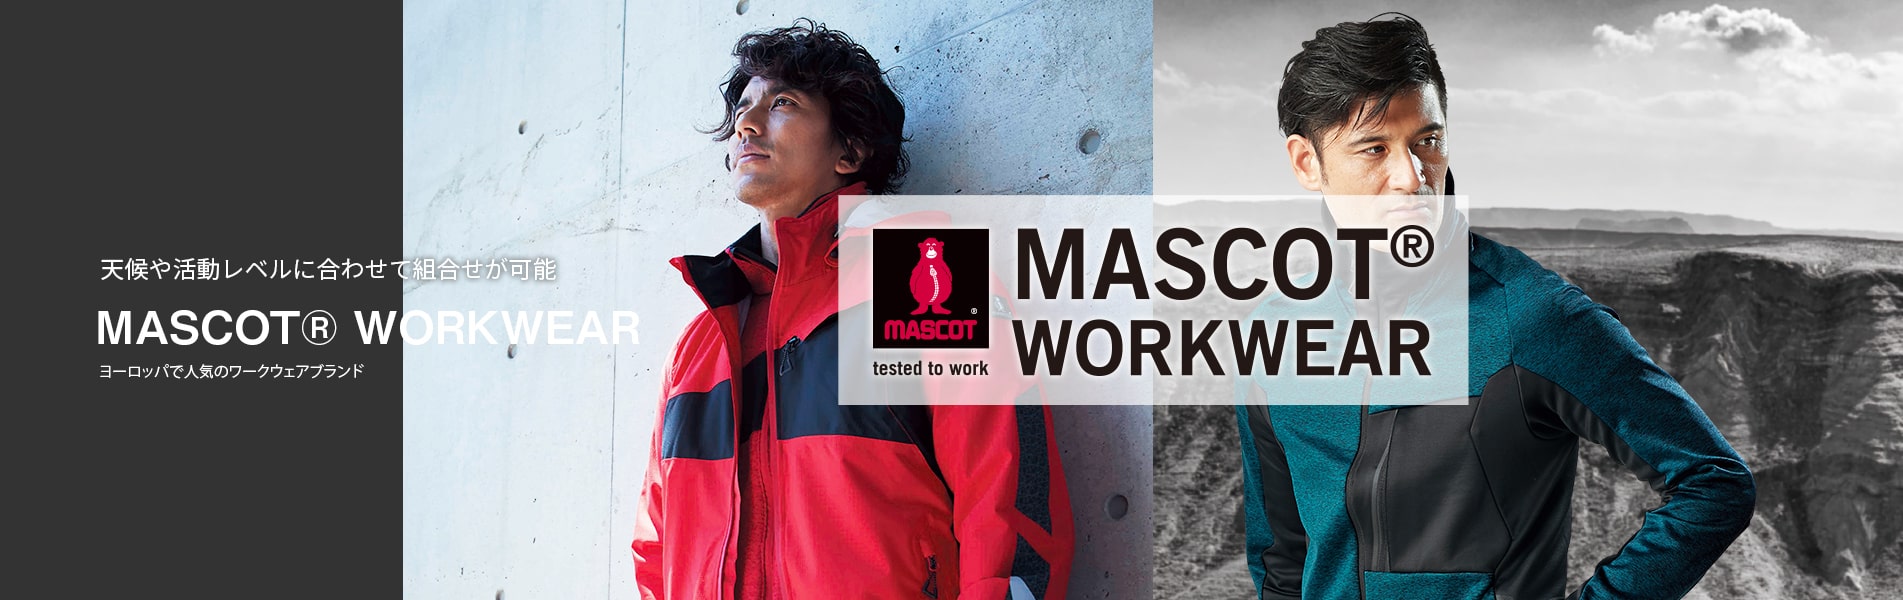 天候や活動レベルに合わせて組合せが可能 MASCOT® WORKWEAR